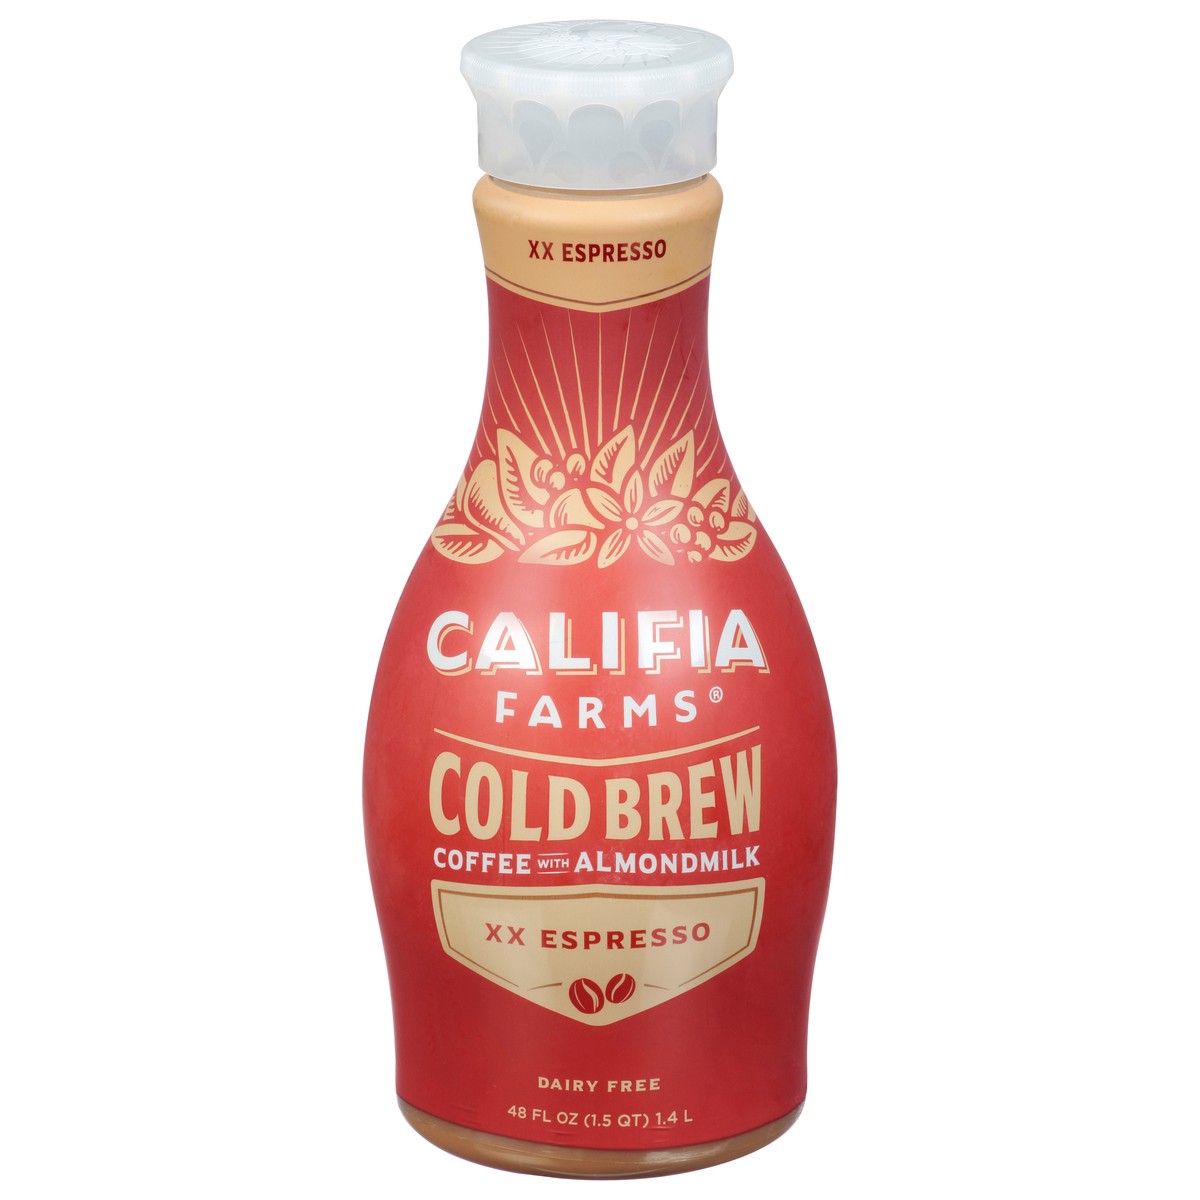 slide 9 of 14, Califia Farms XX Espresso Cold Brew Coffee with Almond Milk, 48 fl oz